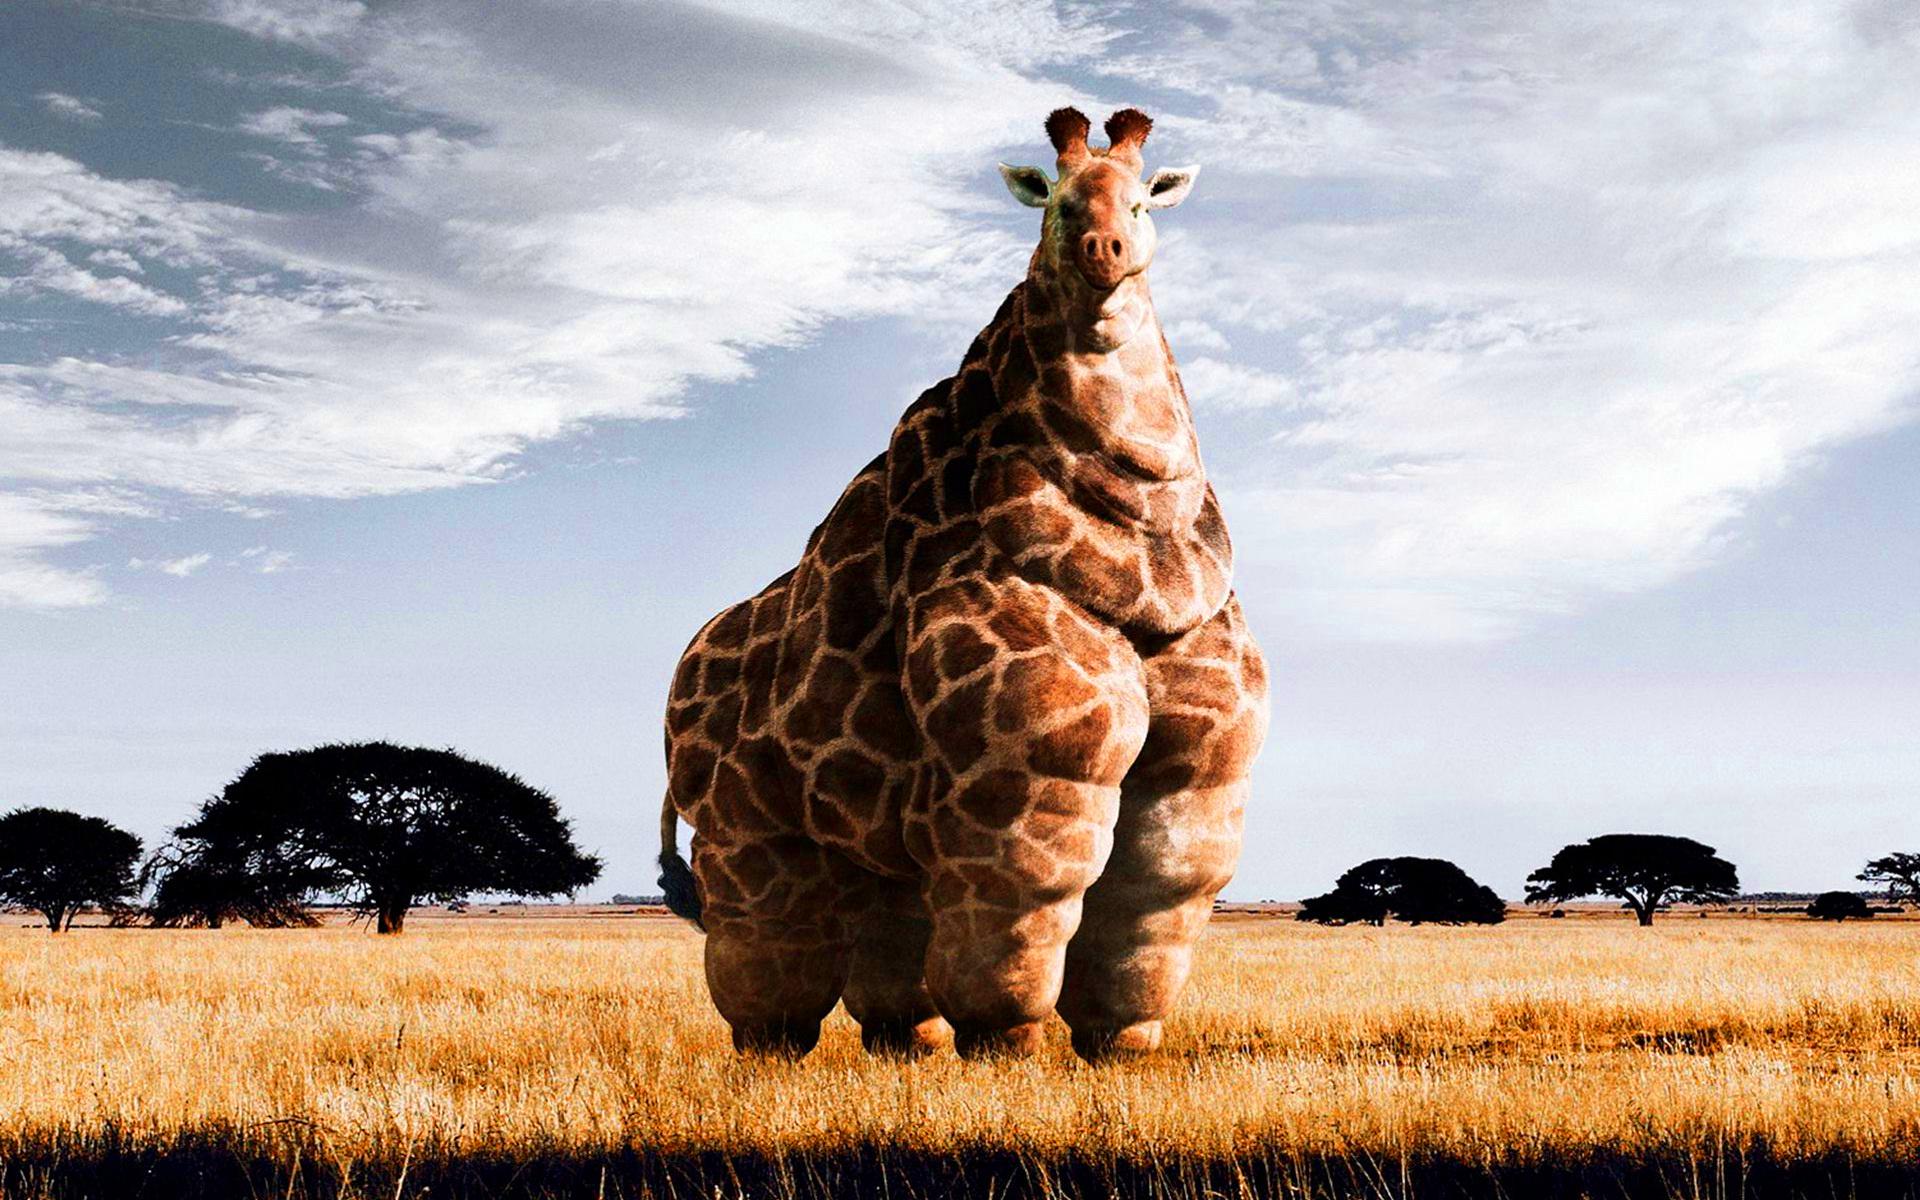 Fat-giraffe